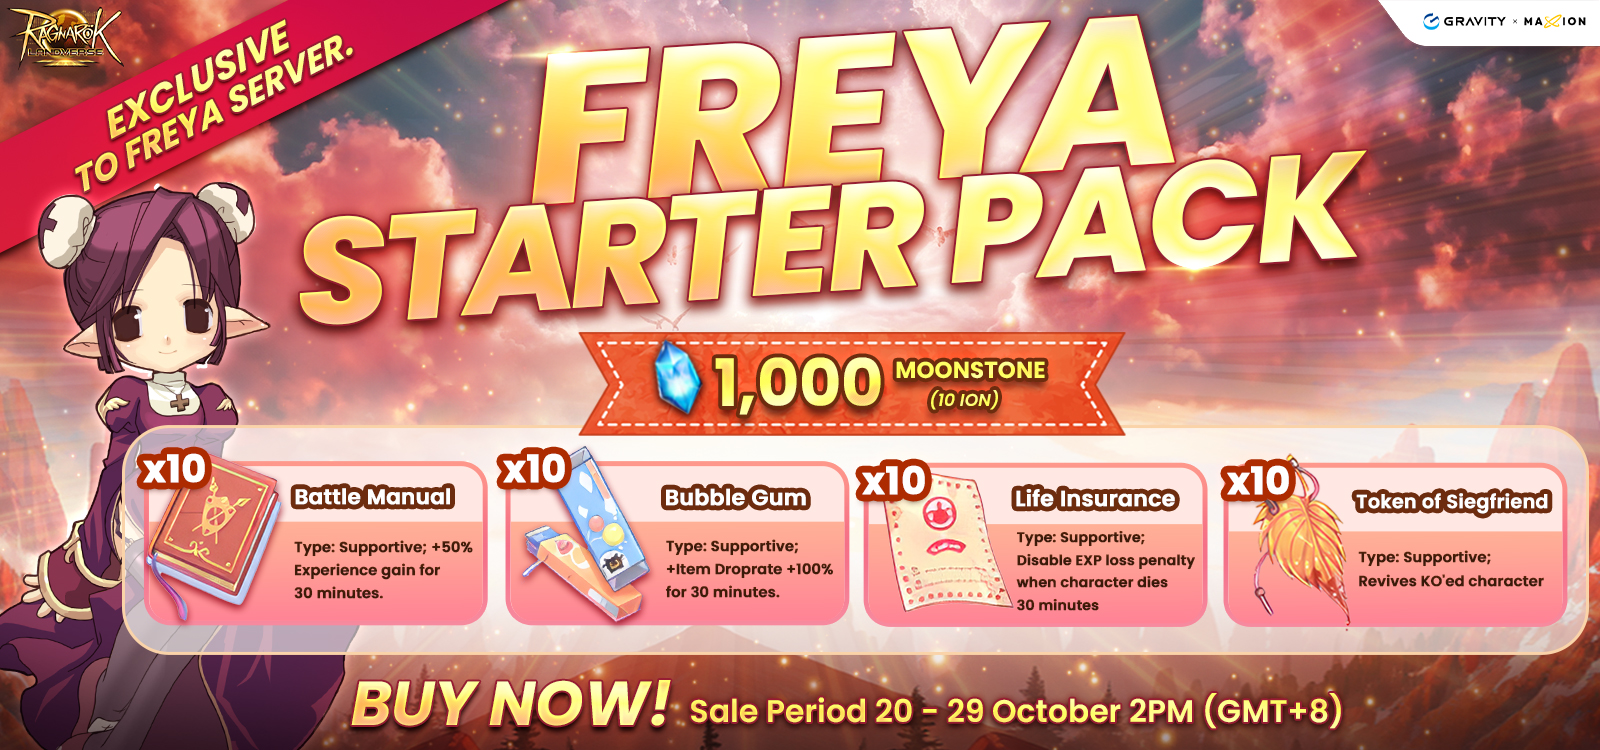 Freya Starter Pack